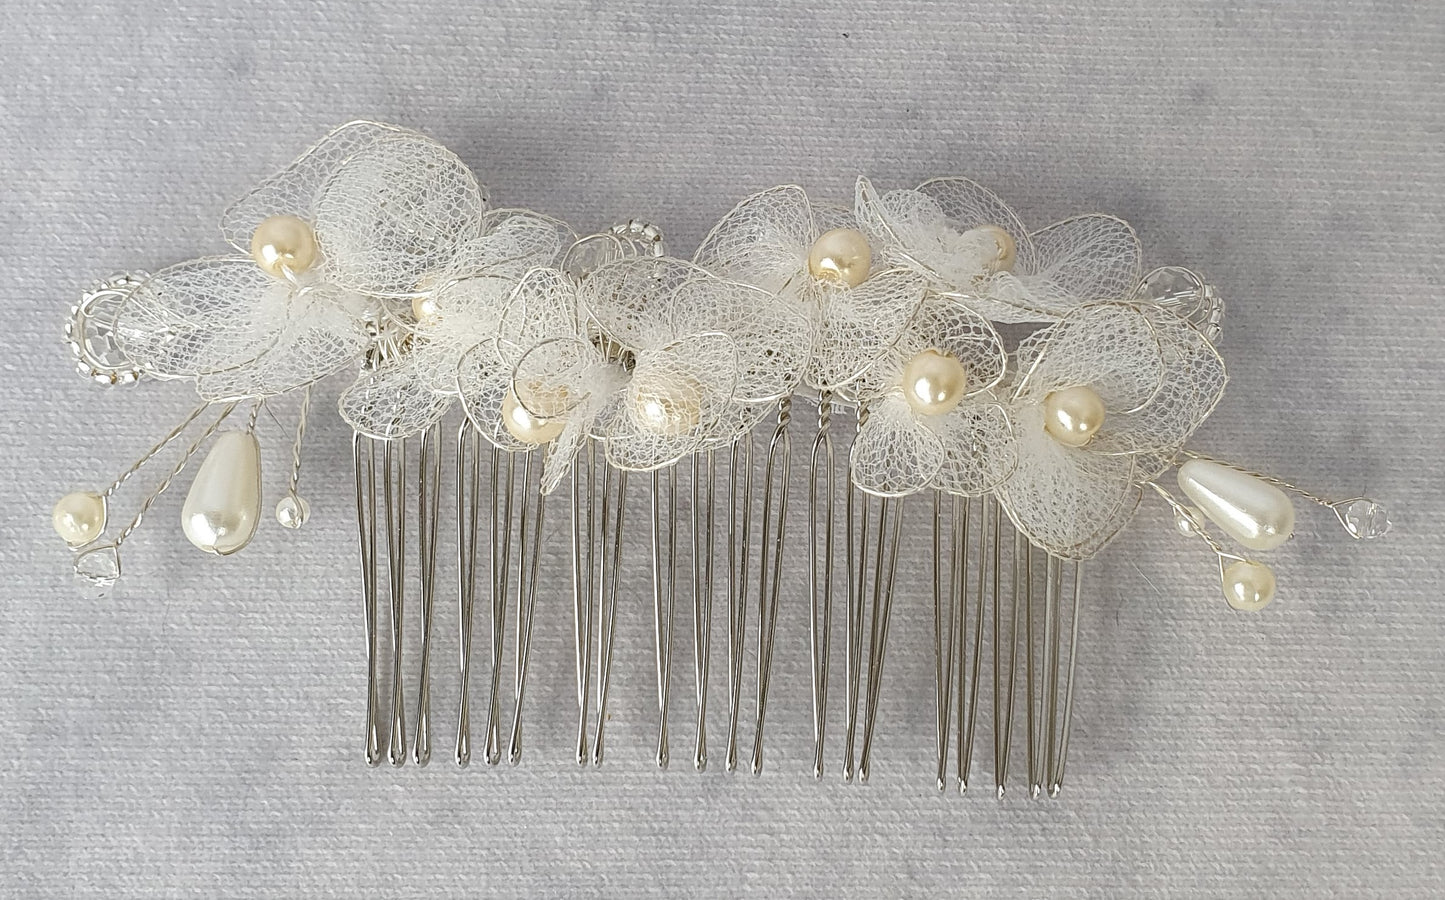 Peineta de novia hecha a mano con perlas, piedras caídas y flores de tul - accesorio para el cabello para bodas con peineta de metal plateado